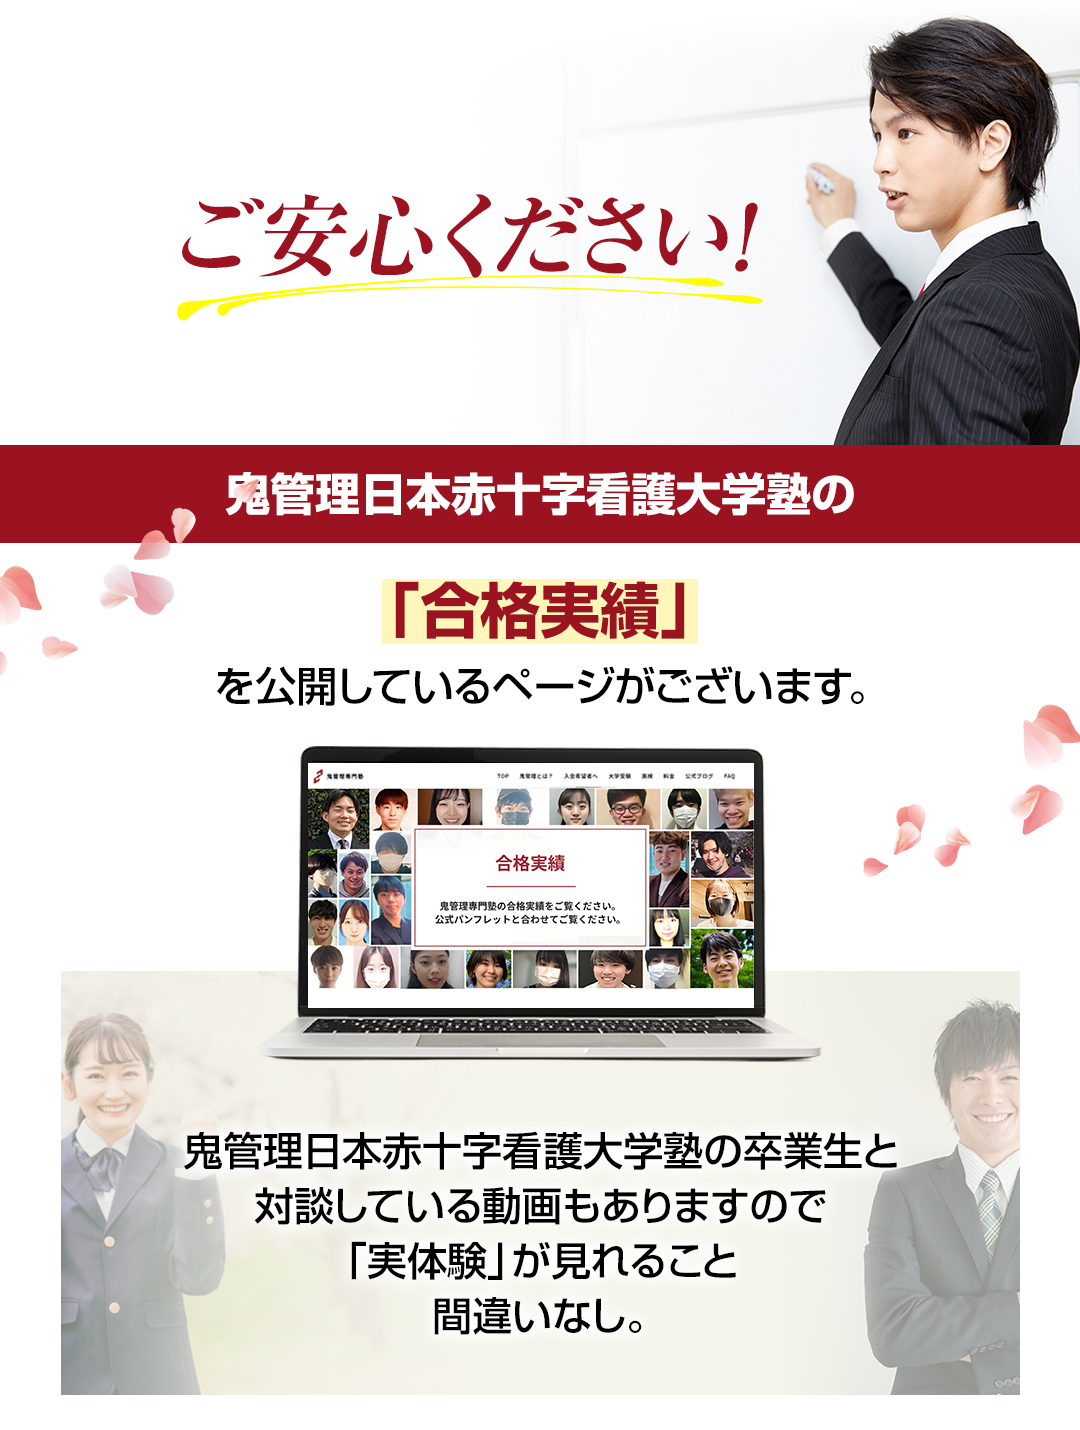 鬼管理日本赤十字看護大学塾の「合格実績」を公開しているページがございます